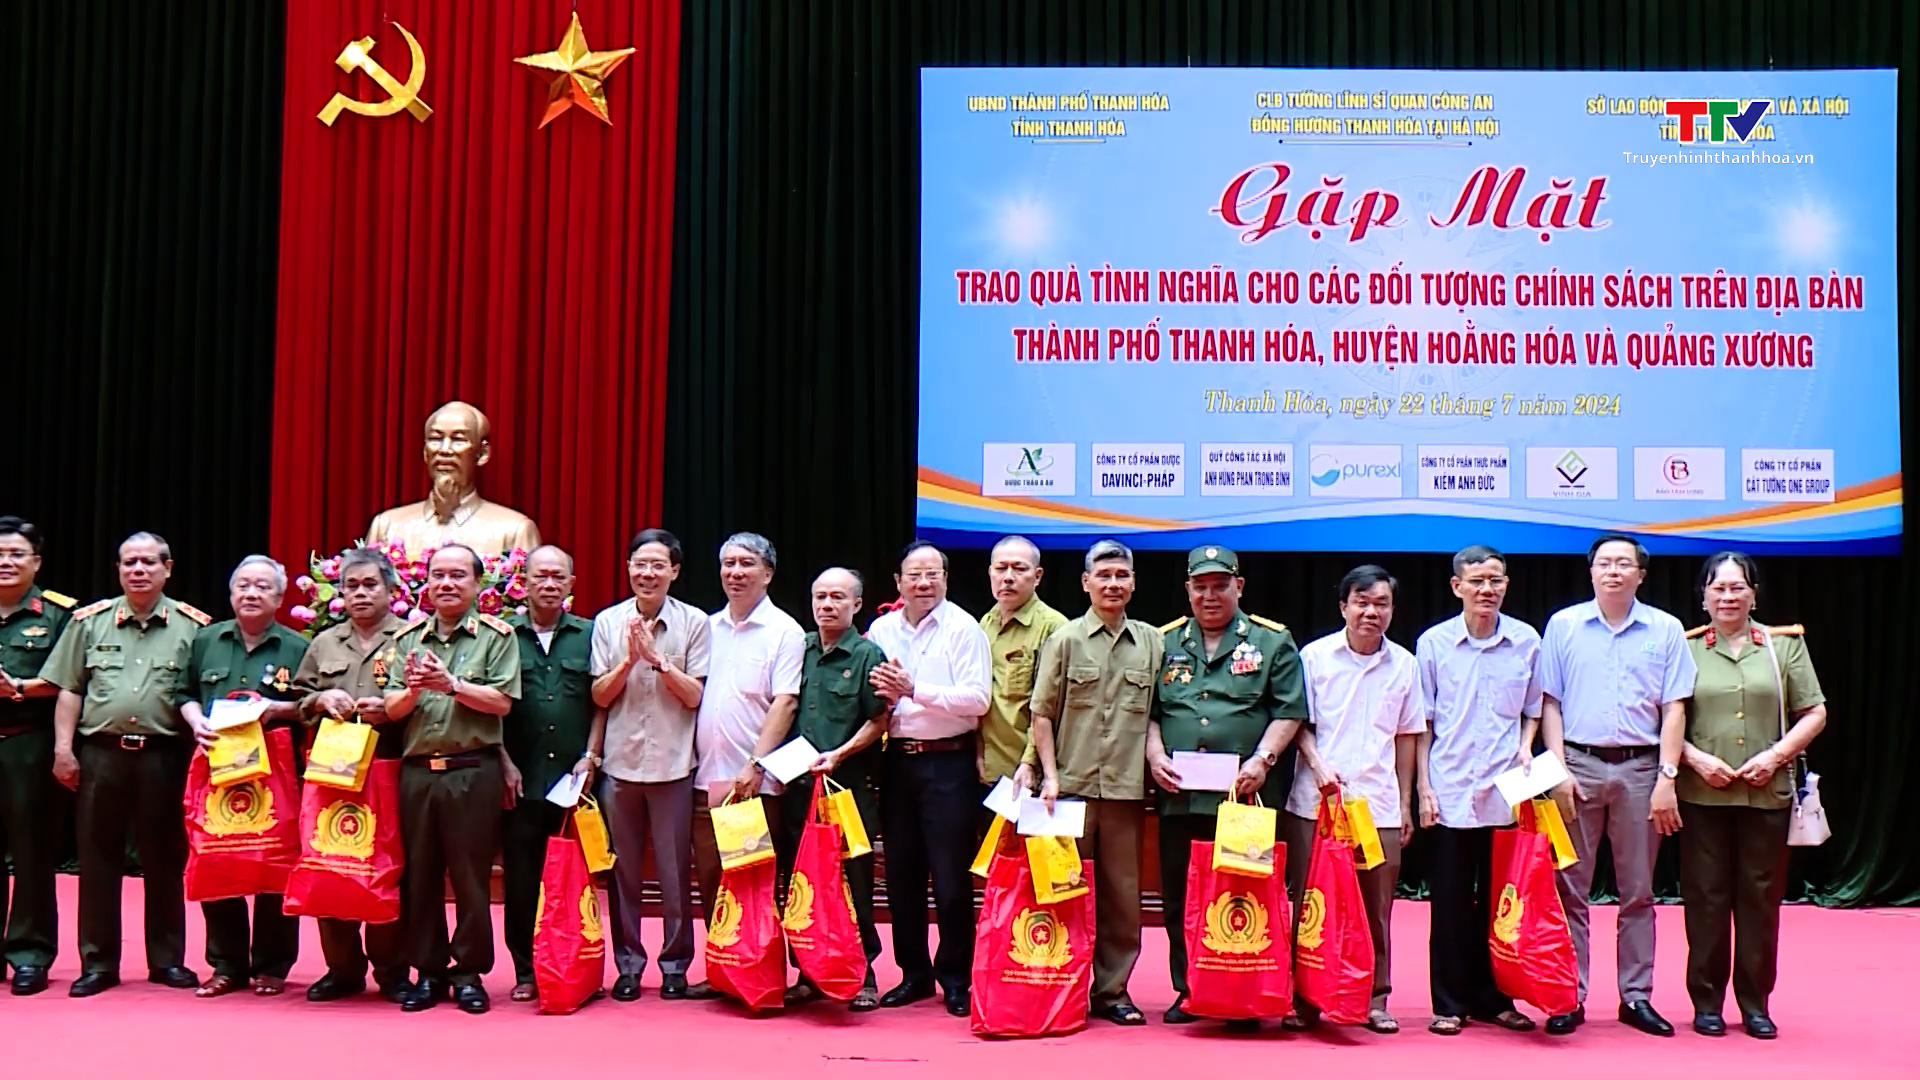 Câu lạc bộ tướng lĩnh, sĩ quan Công an đồng hương Thanh Hóa tại Hà Nội trao quà cho các đối tượng chính sách- Ảnh 1.